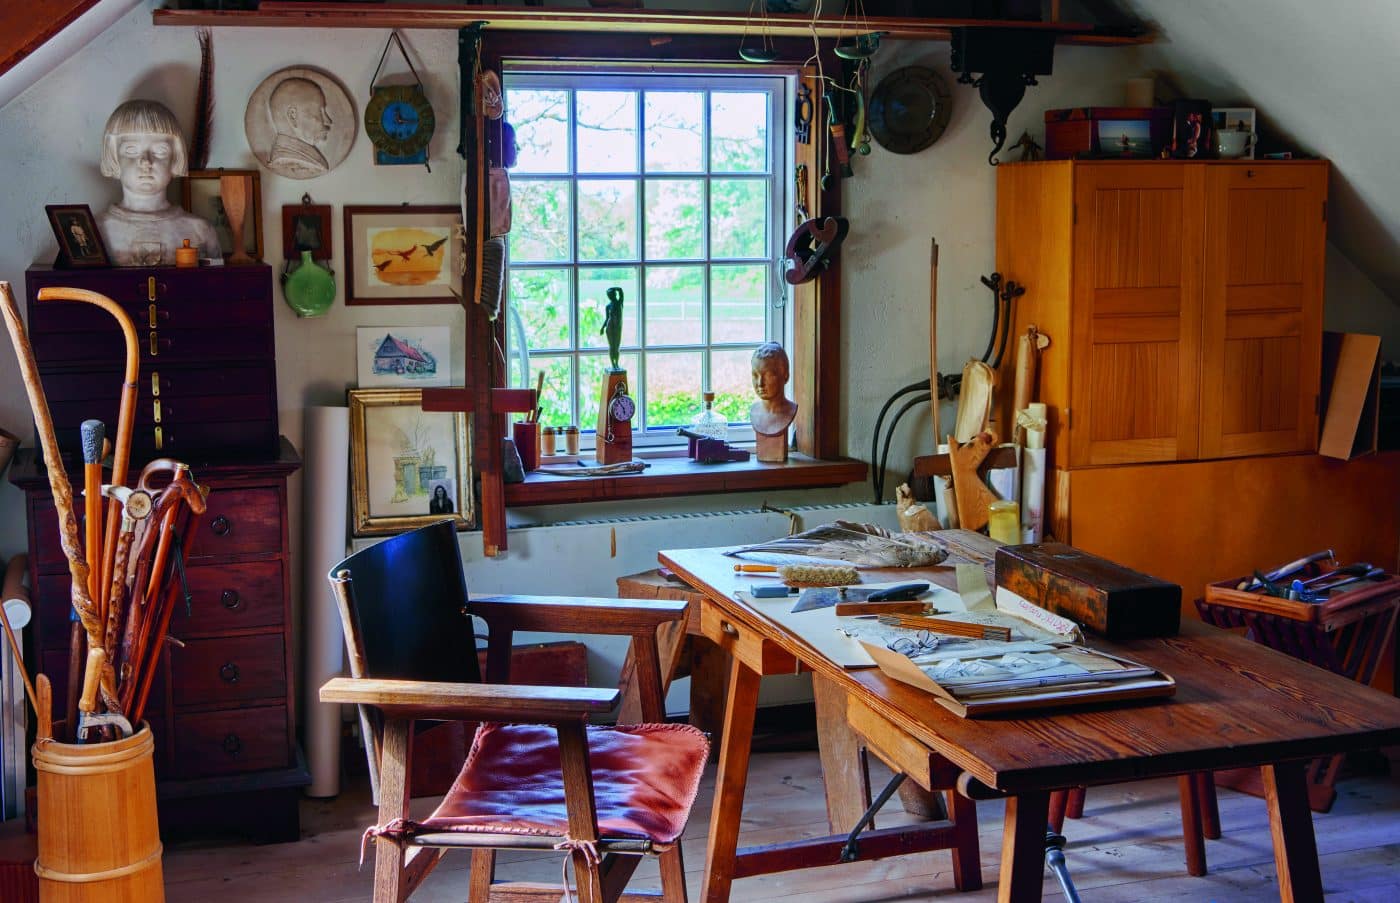 Jens Quistgaard’s home studio in Strandgaarden, Denmark